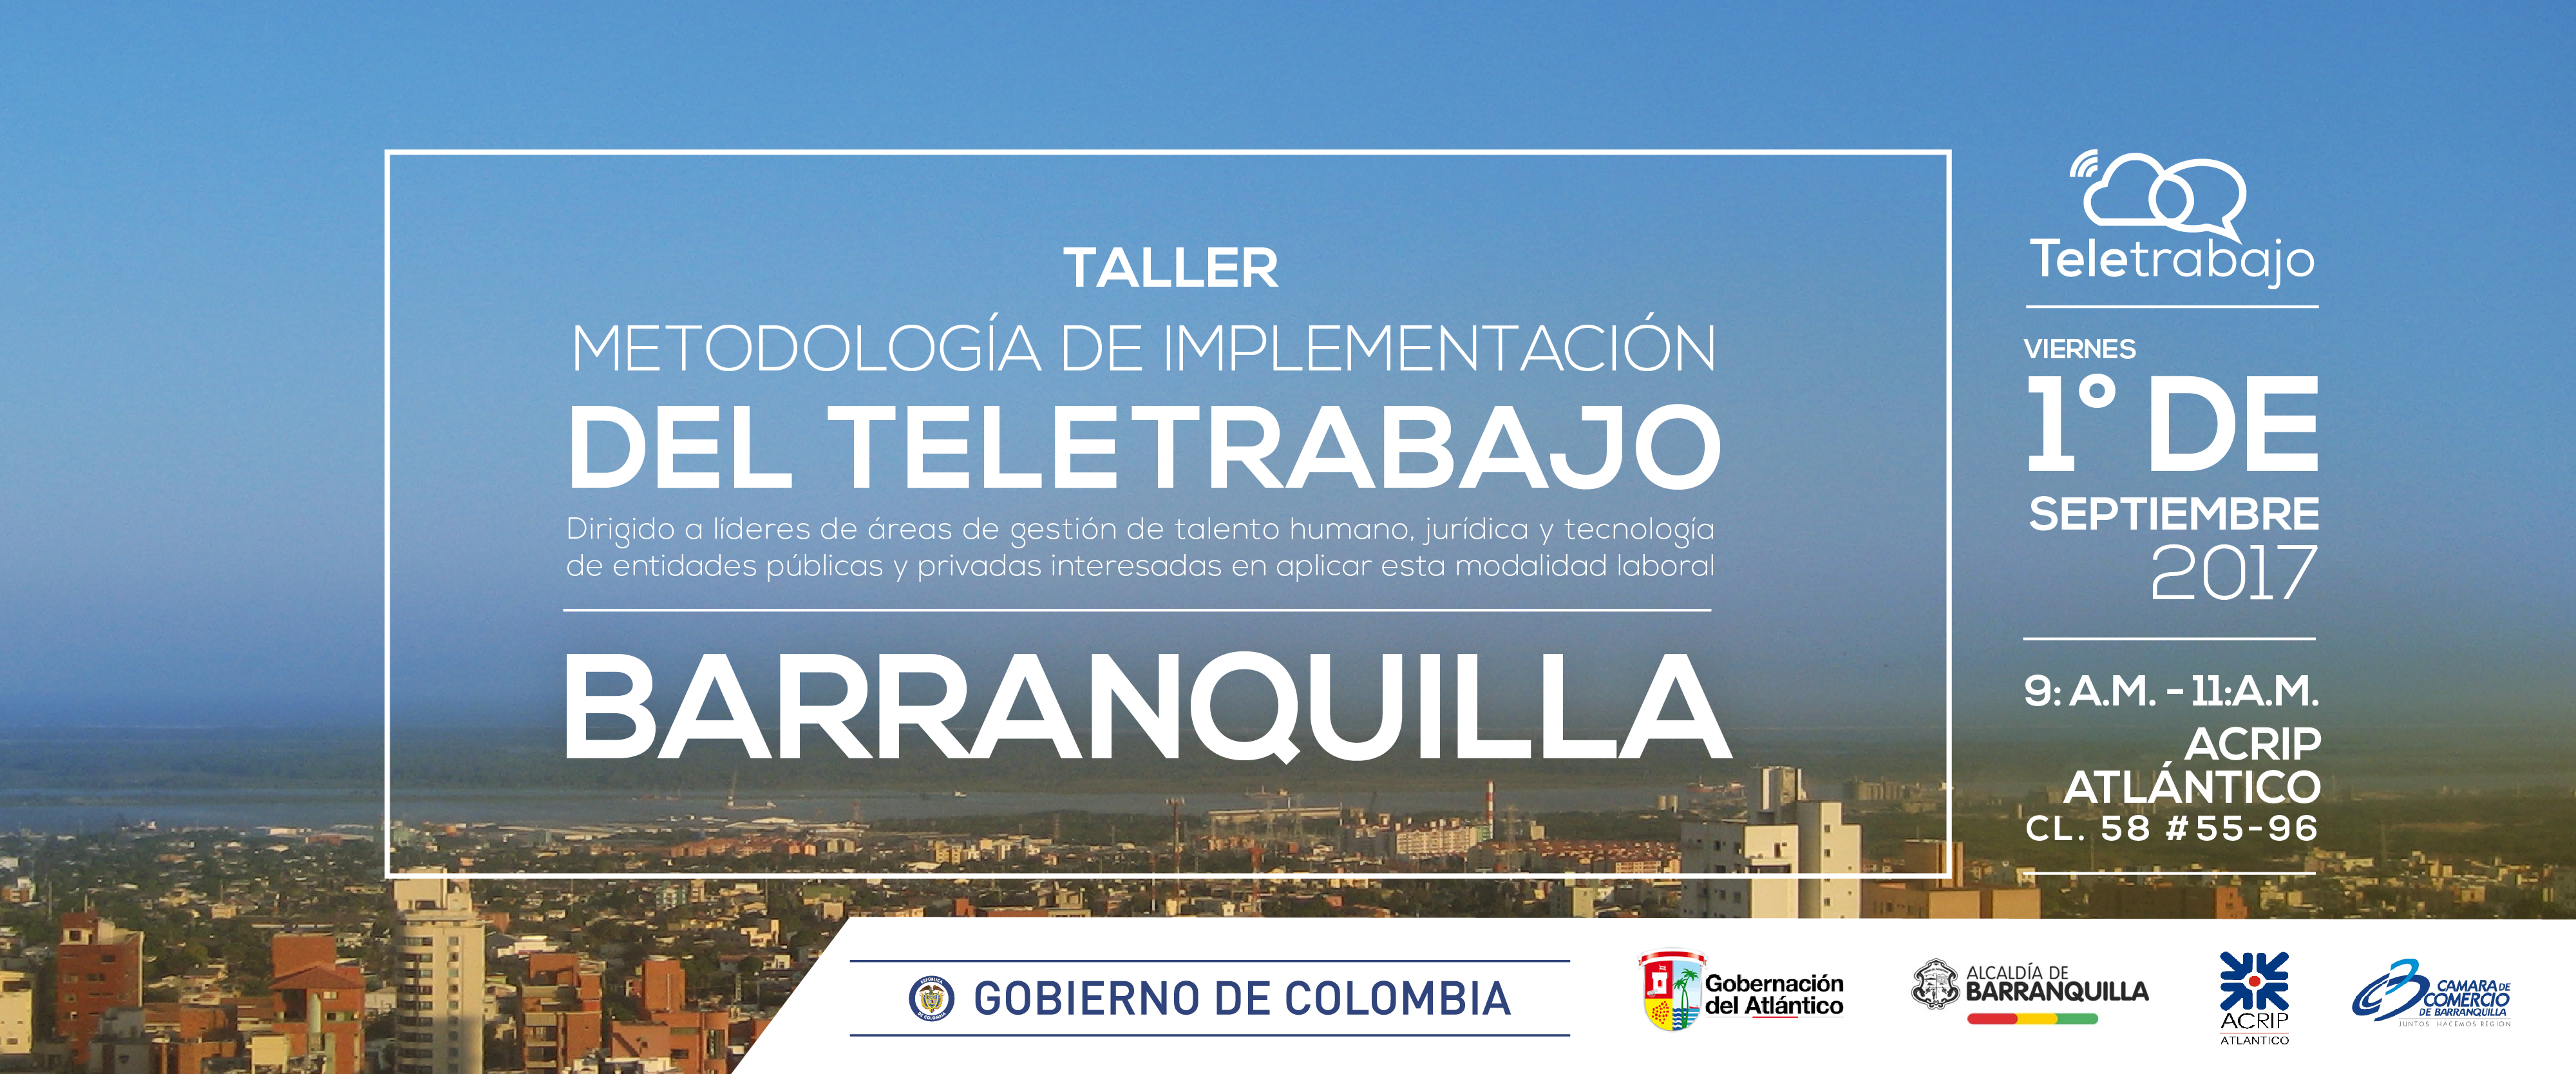 El Teletrabajo, la opción que cuida al medio ambiente llega a Barranquilla